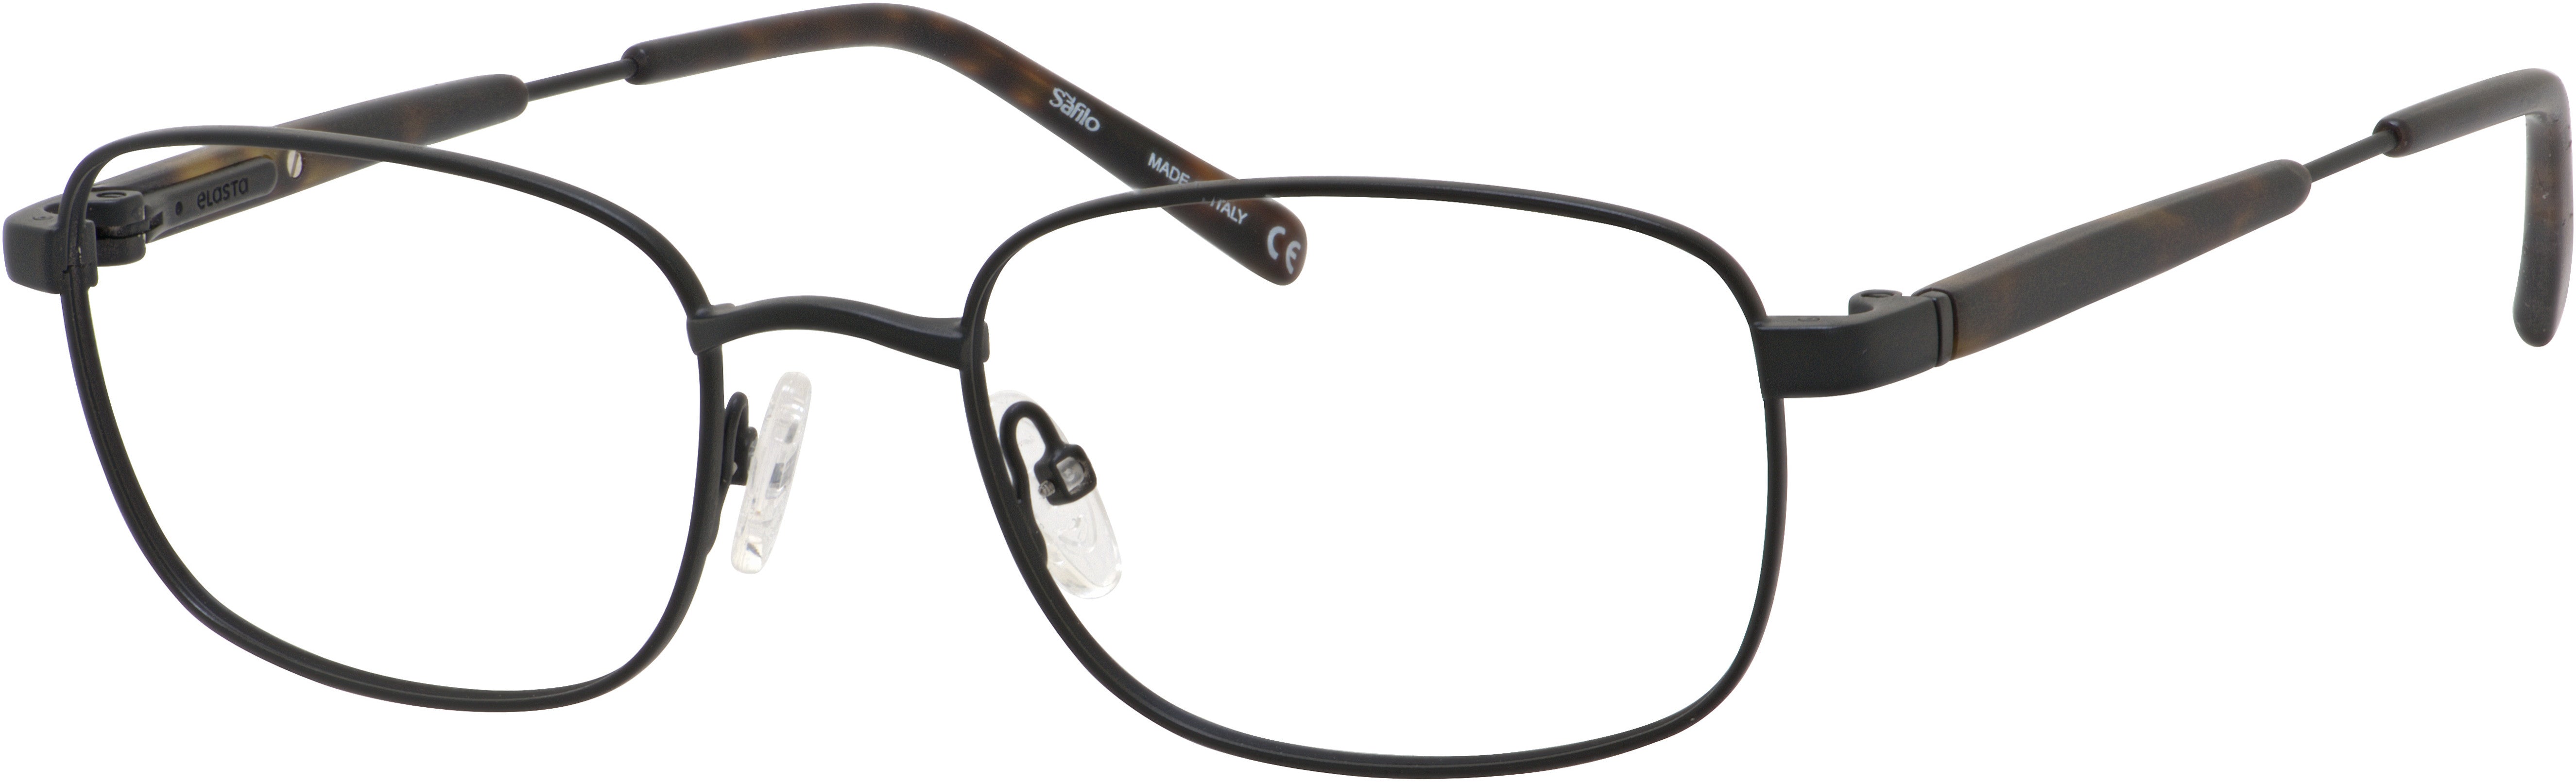  Elasta 7221 Rectangular Eyeglasses 0003-0003  Matte Black (00 Demo Lens)